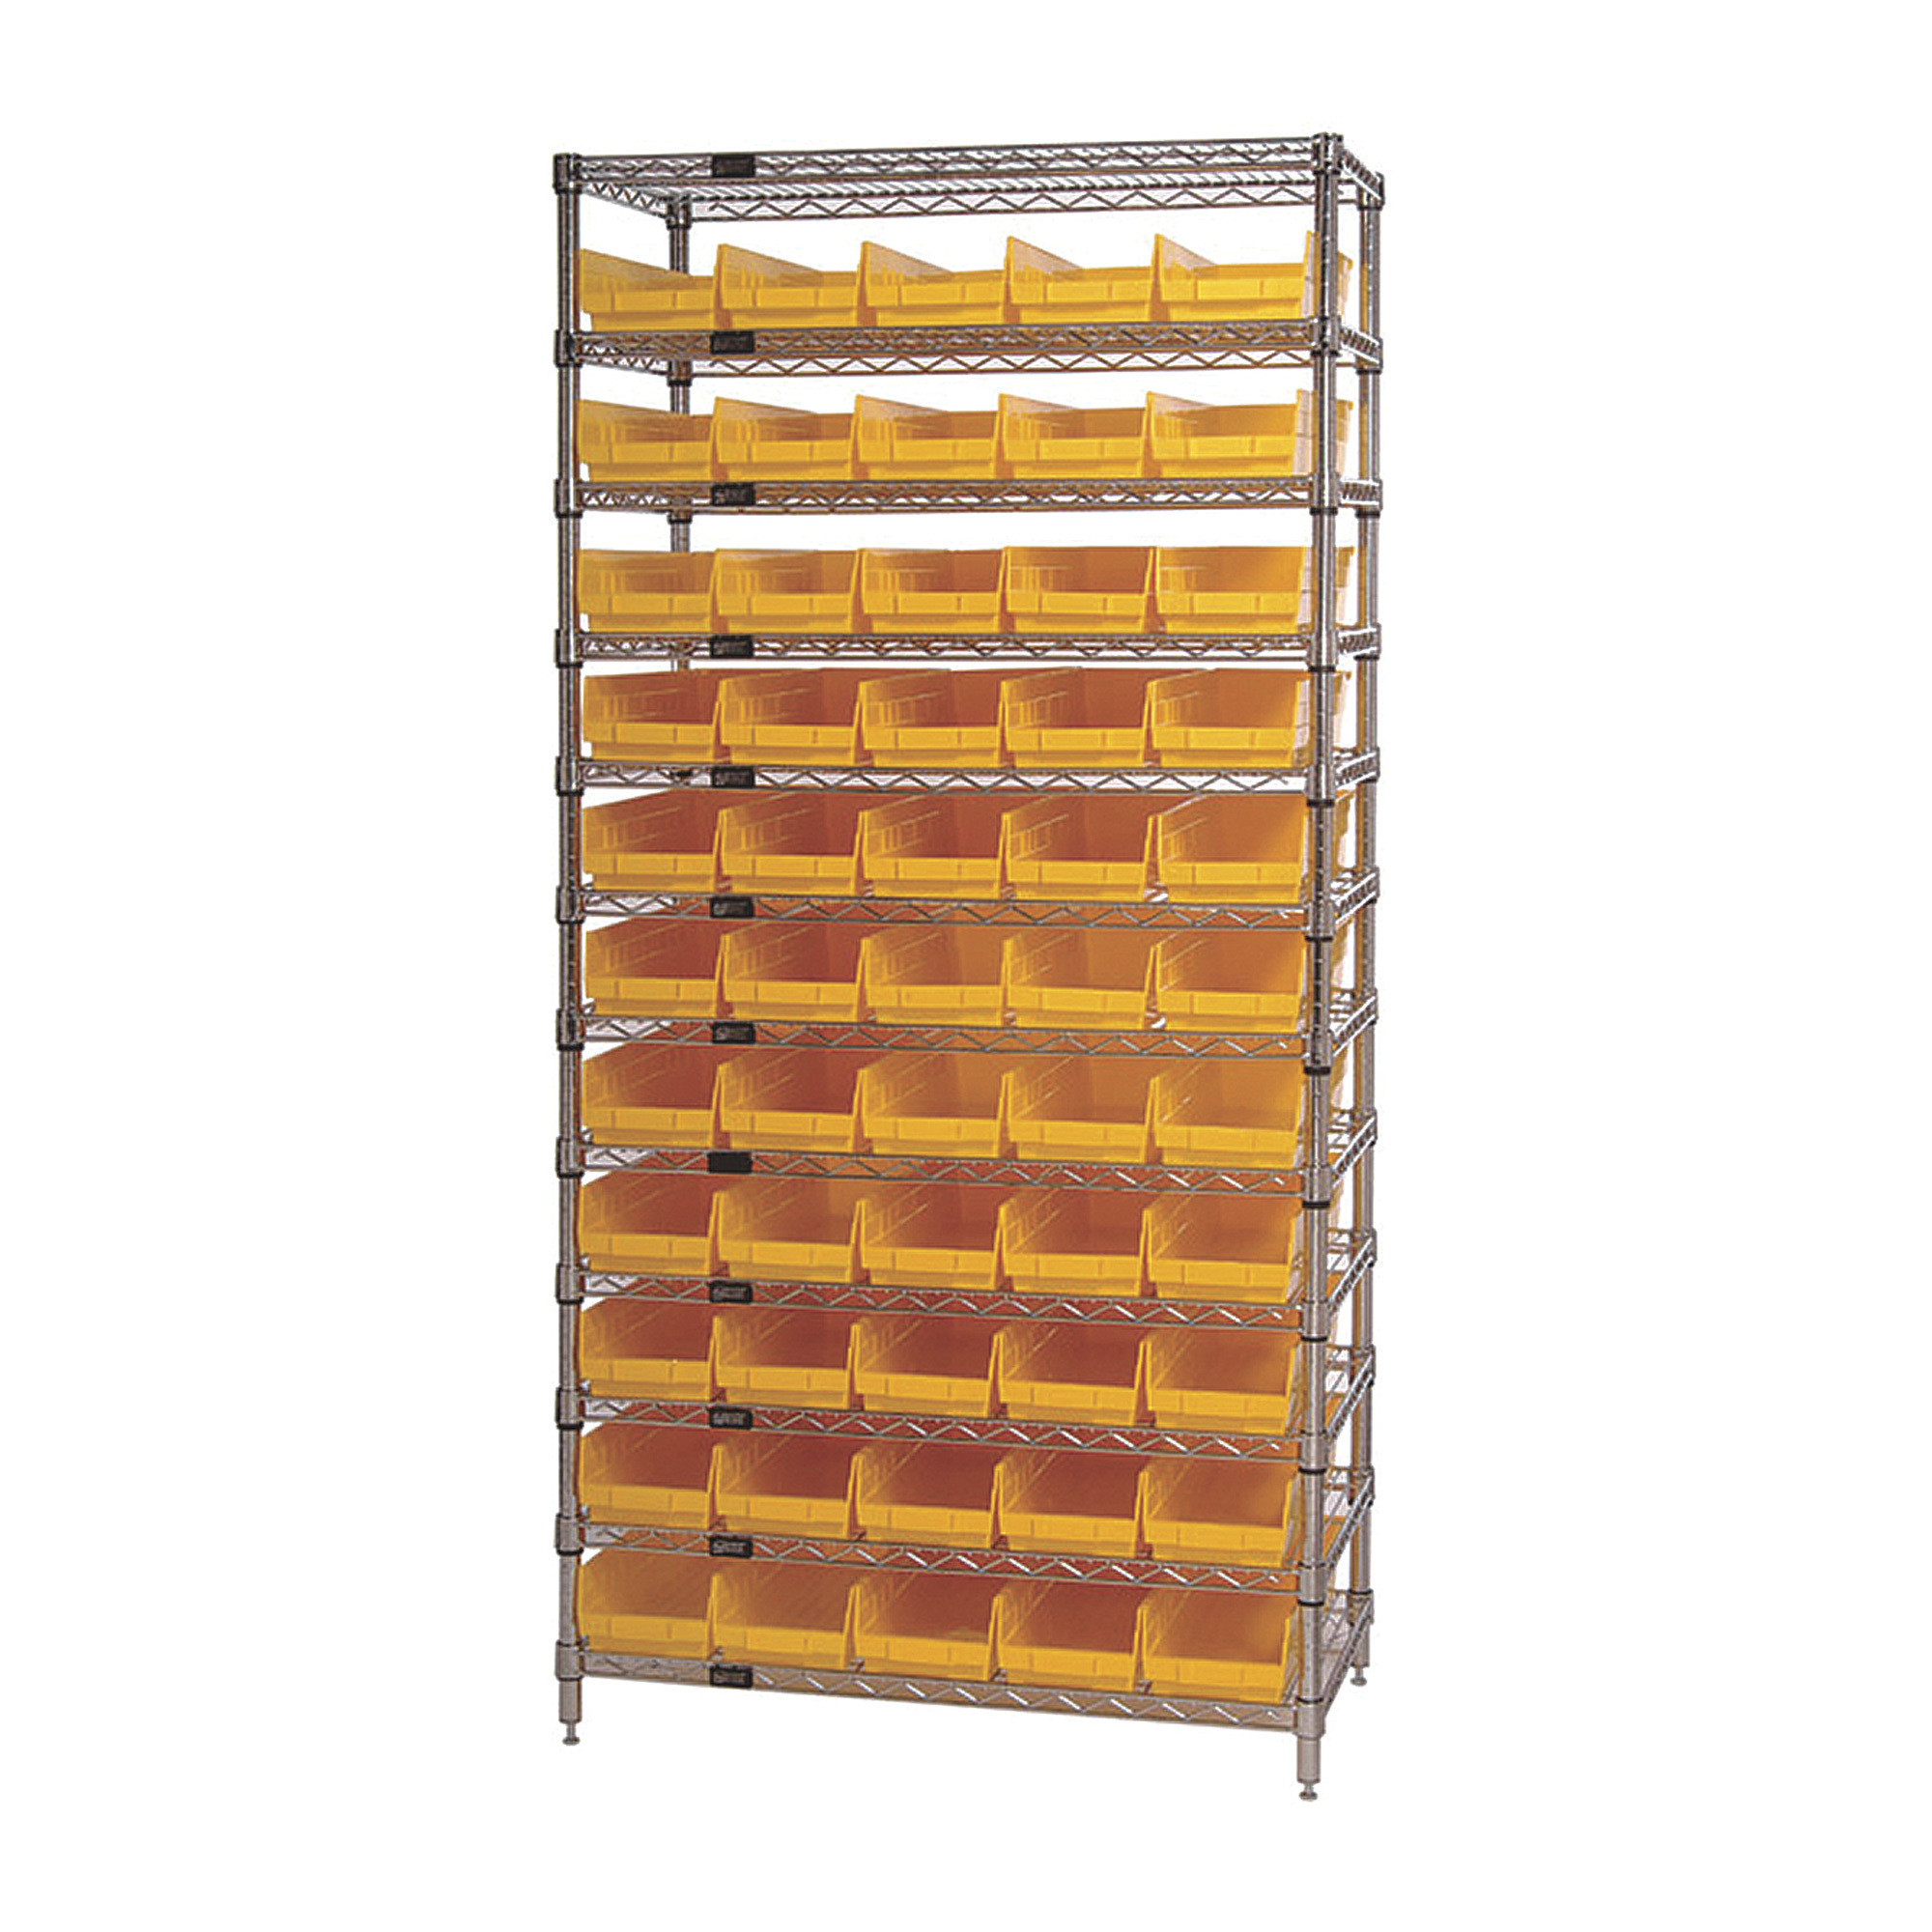 Quantum Storage 55-Bin Chrome Wire Shelf Bin System, 36Inch W x 12Inch D x 74Inch H Rack Size, Yellow, Model WR12-102YL